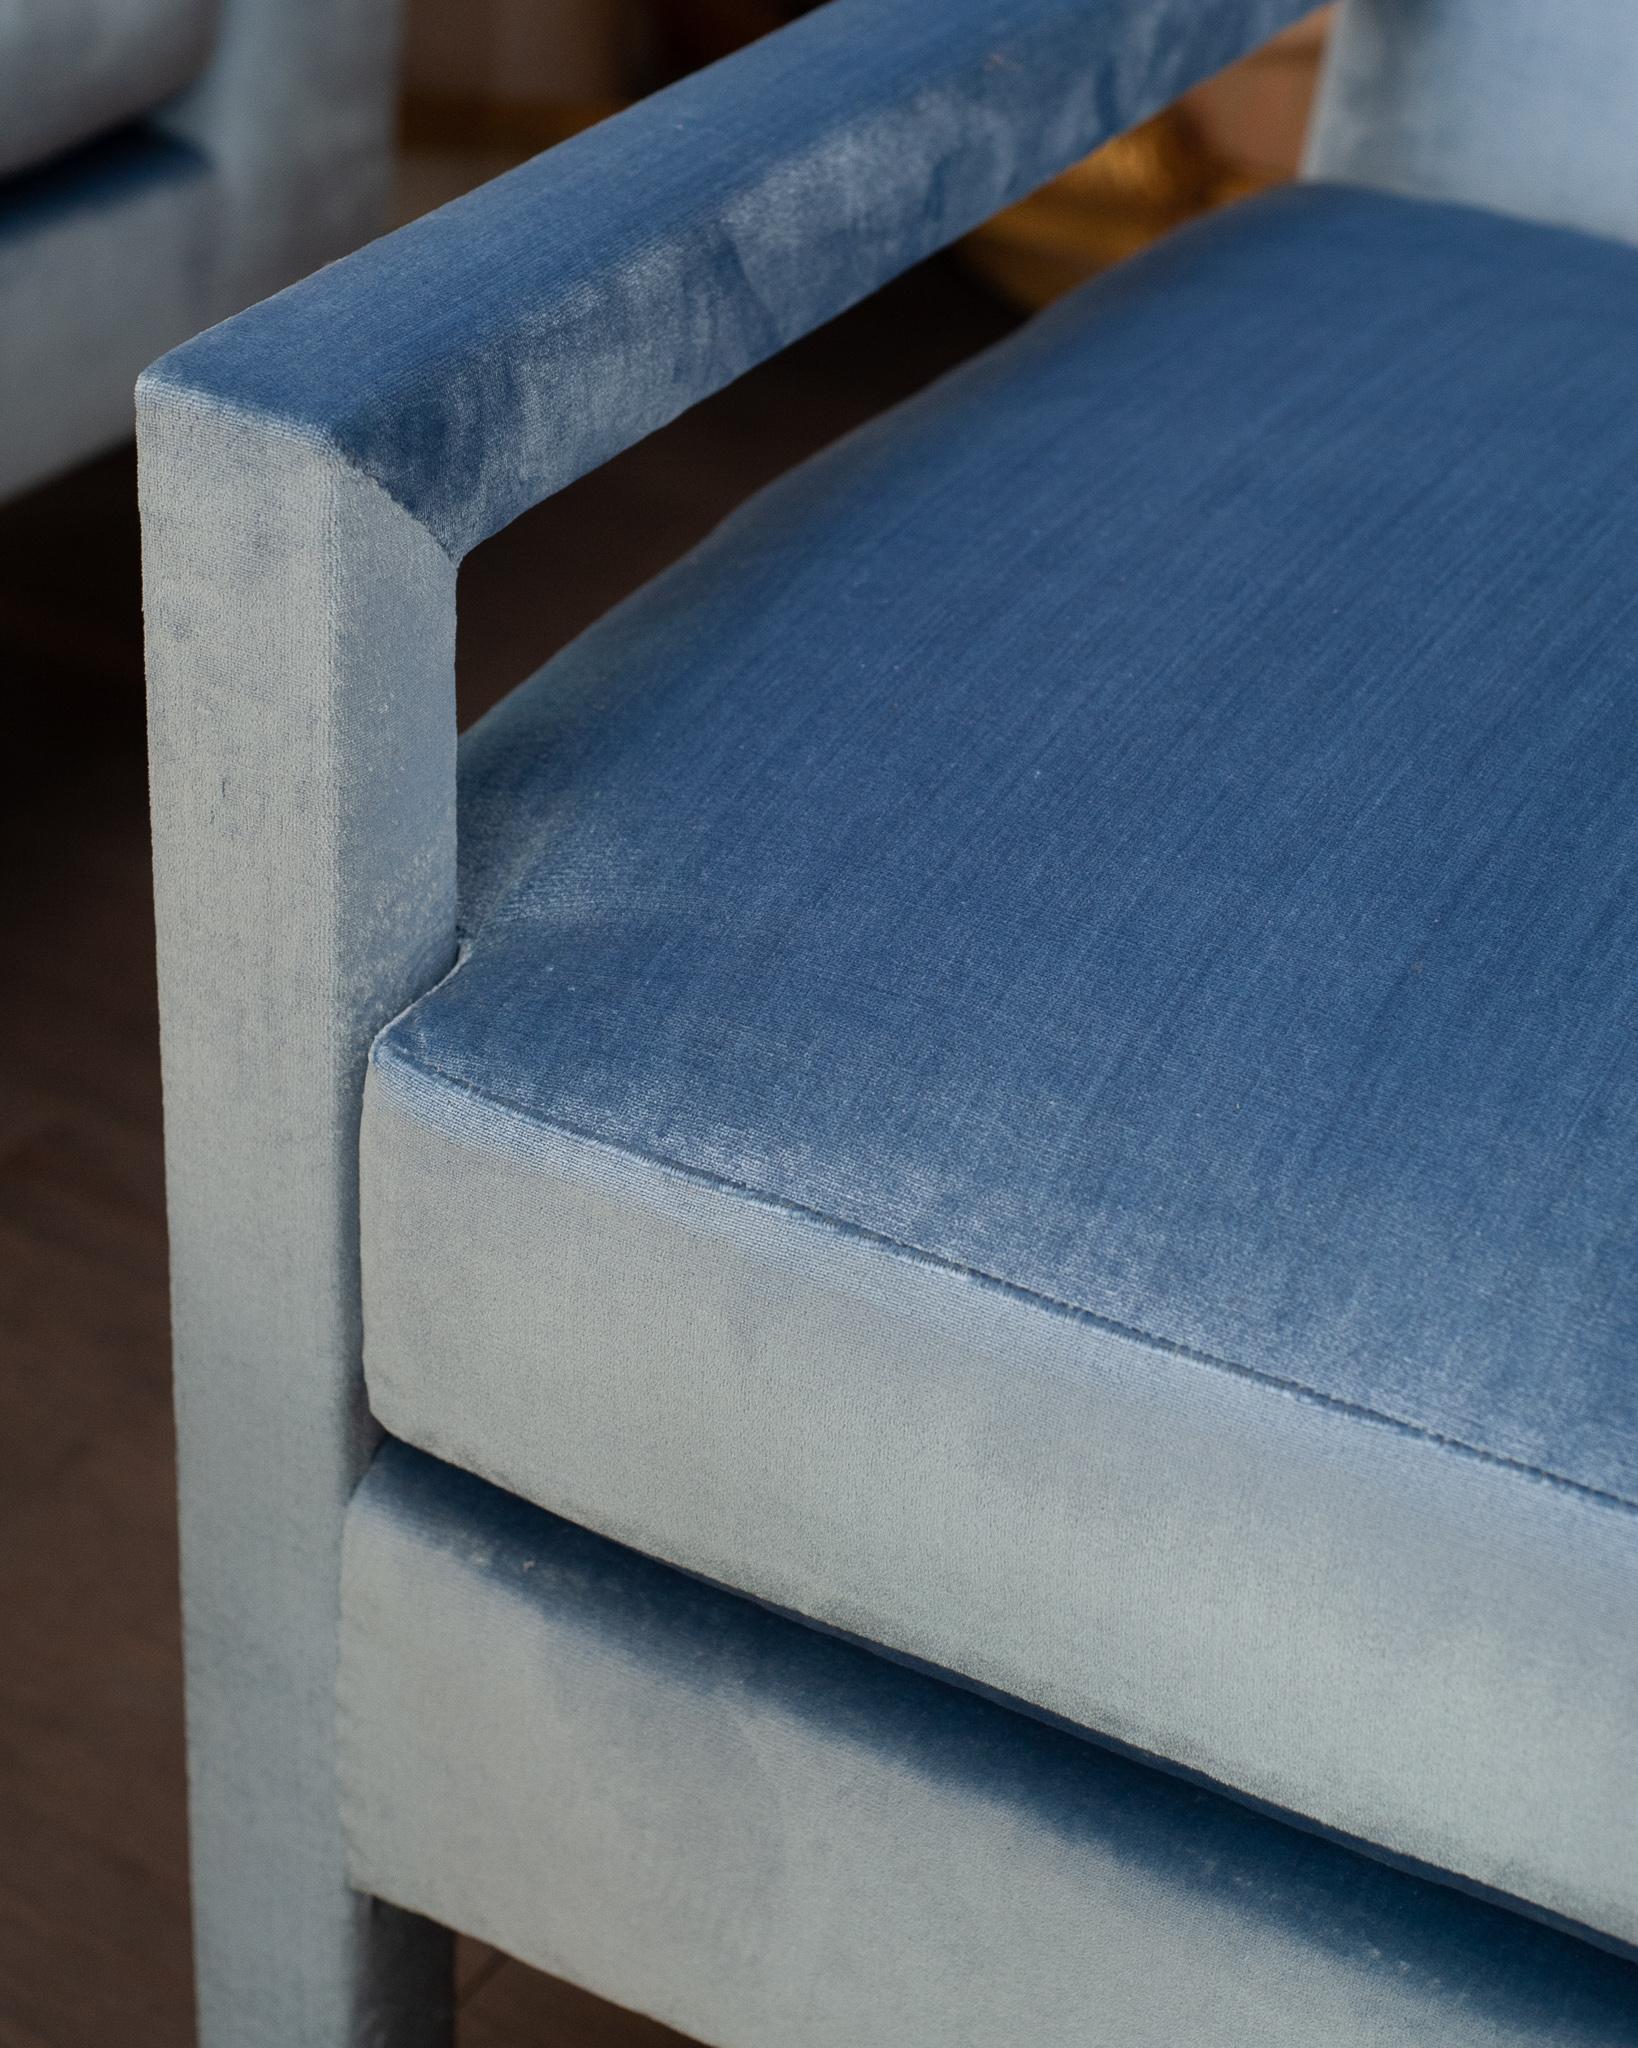 Ces chaises Parsons ont été conçues sur mesure et sont entièrement recouvertes d'un riche velours de soie bleu delft provenant de Paris par le maître tapissier du Studio Maison Nurita. L'un des investissements les plus importants dans une maison